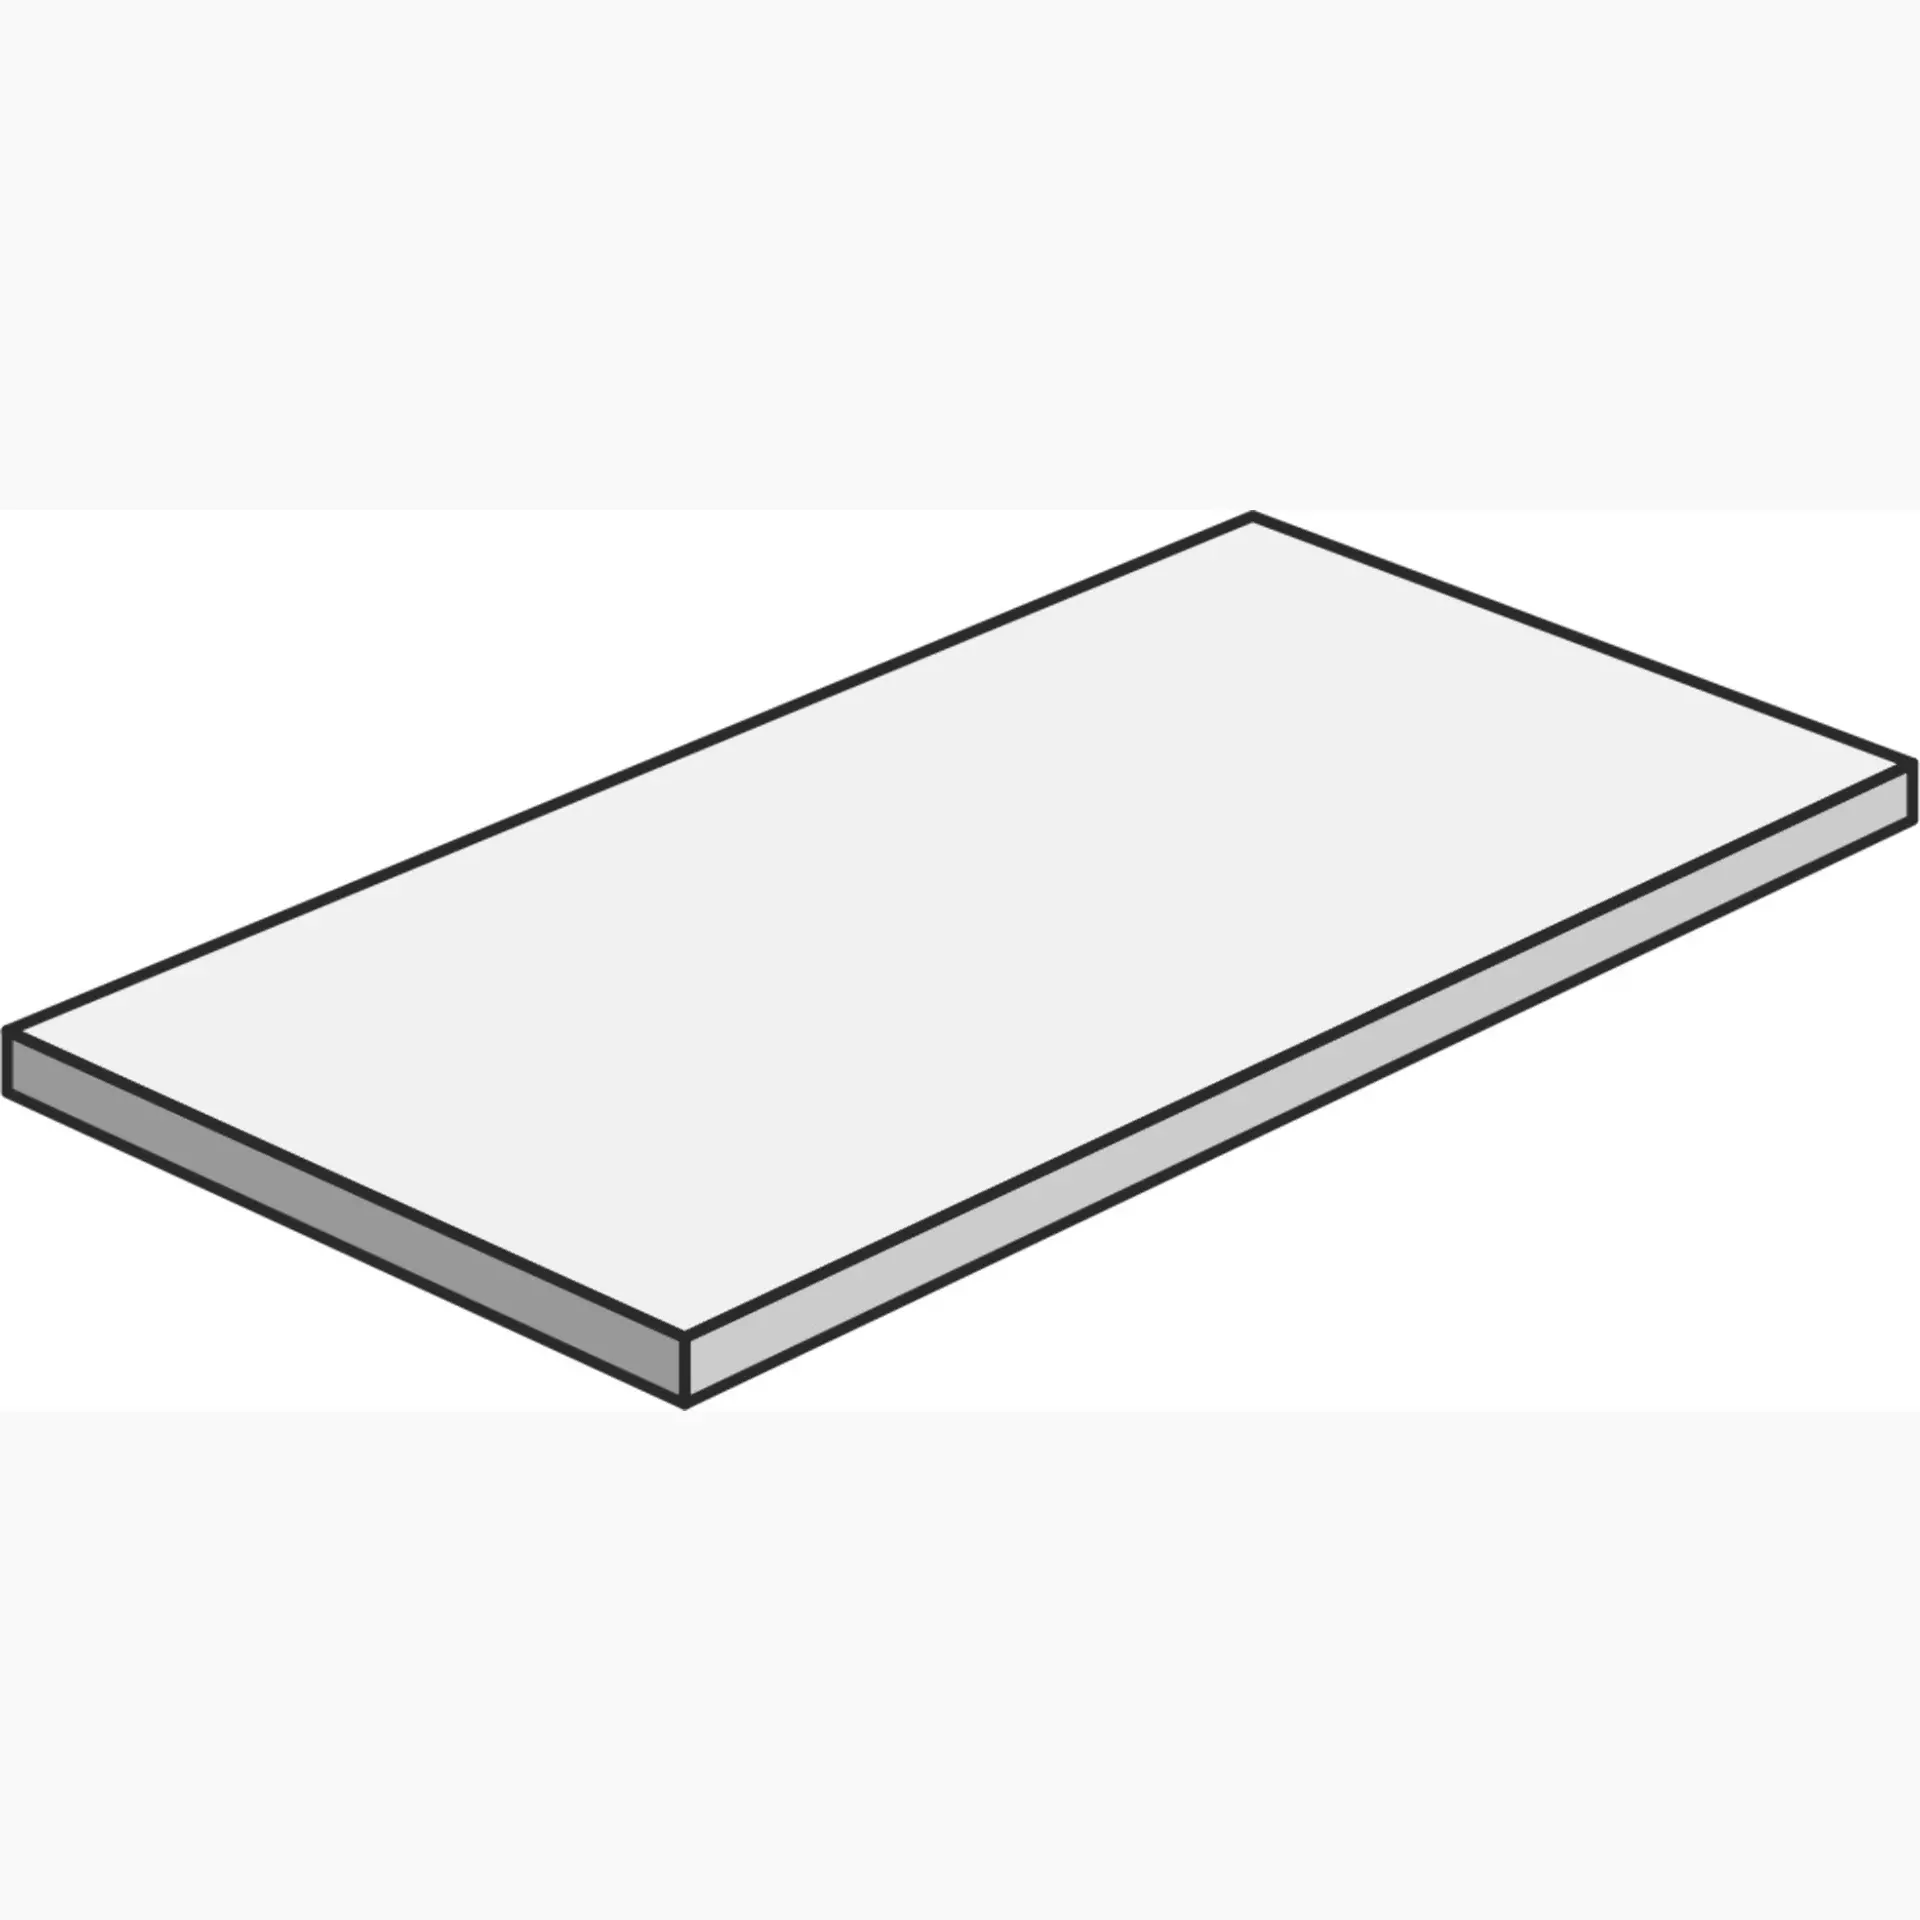 Cerdomus Legarage Grey Matt Stair plate Corner Plate Left Costa Retta 82002 33x120cm rectified 9,5mm